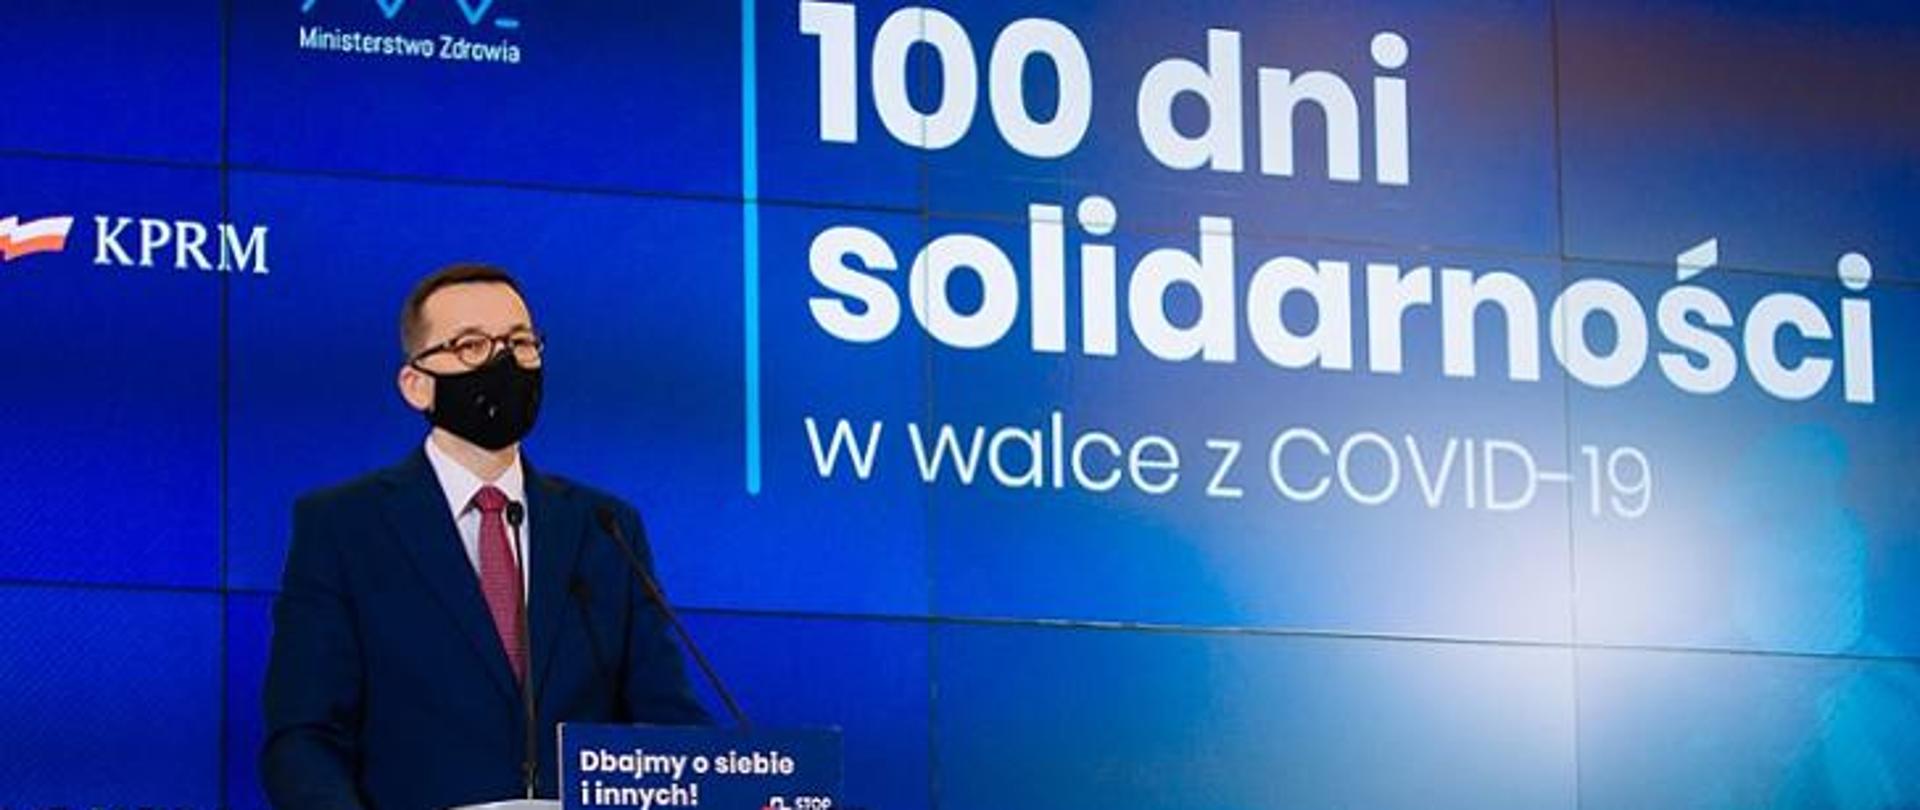 Premier Mateusz Morawiecki na tle ścianki wizyjnej z napisem: 100 dni solidarności w walce z COVID-19.